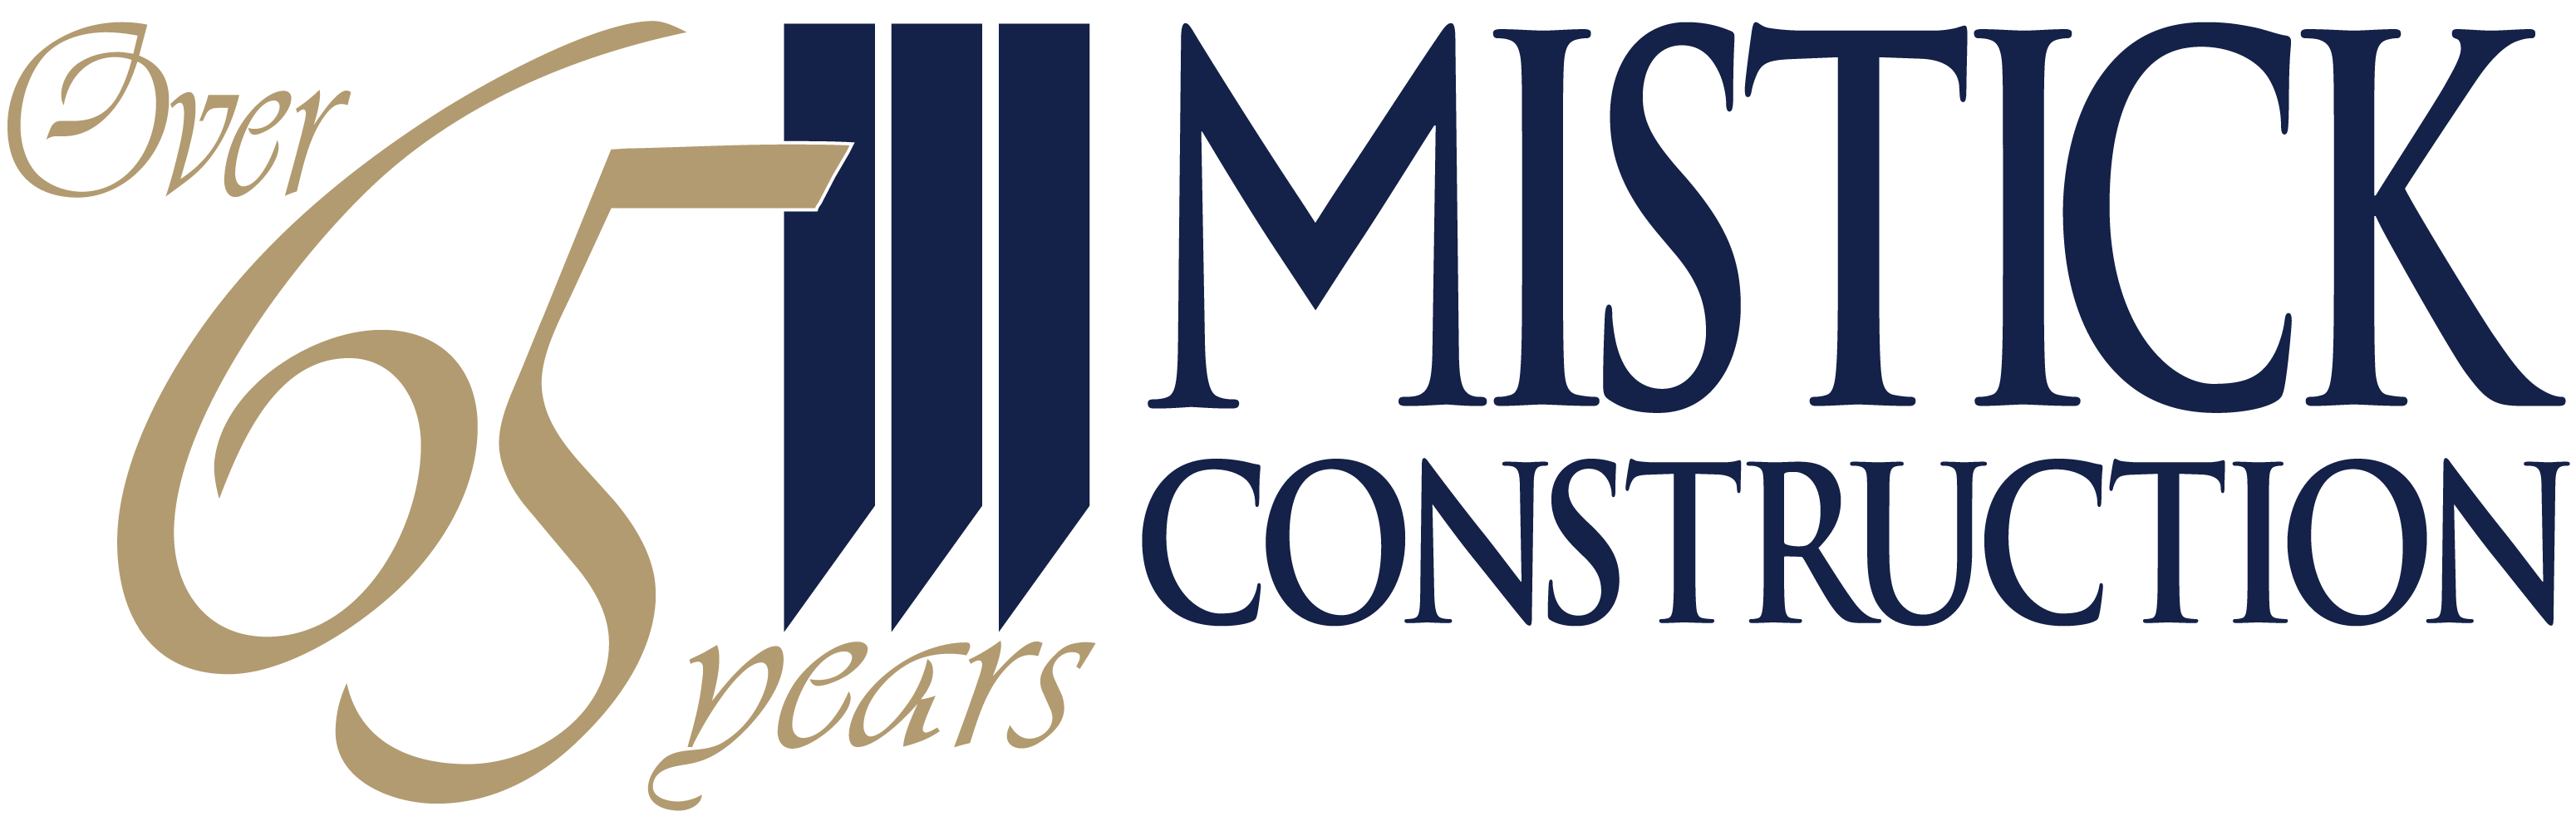 Mistick Construction Company company logo